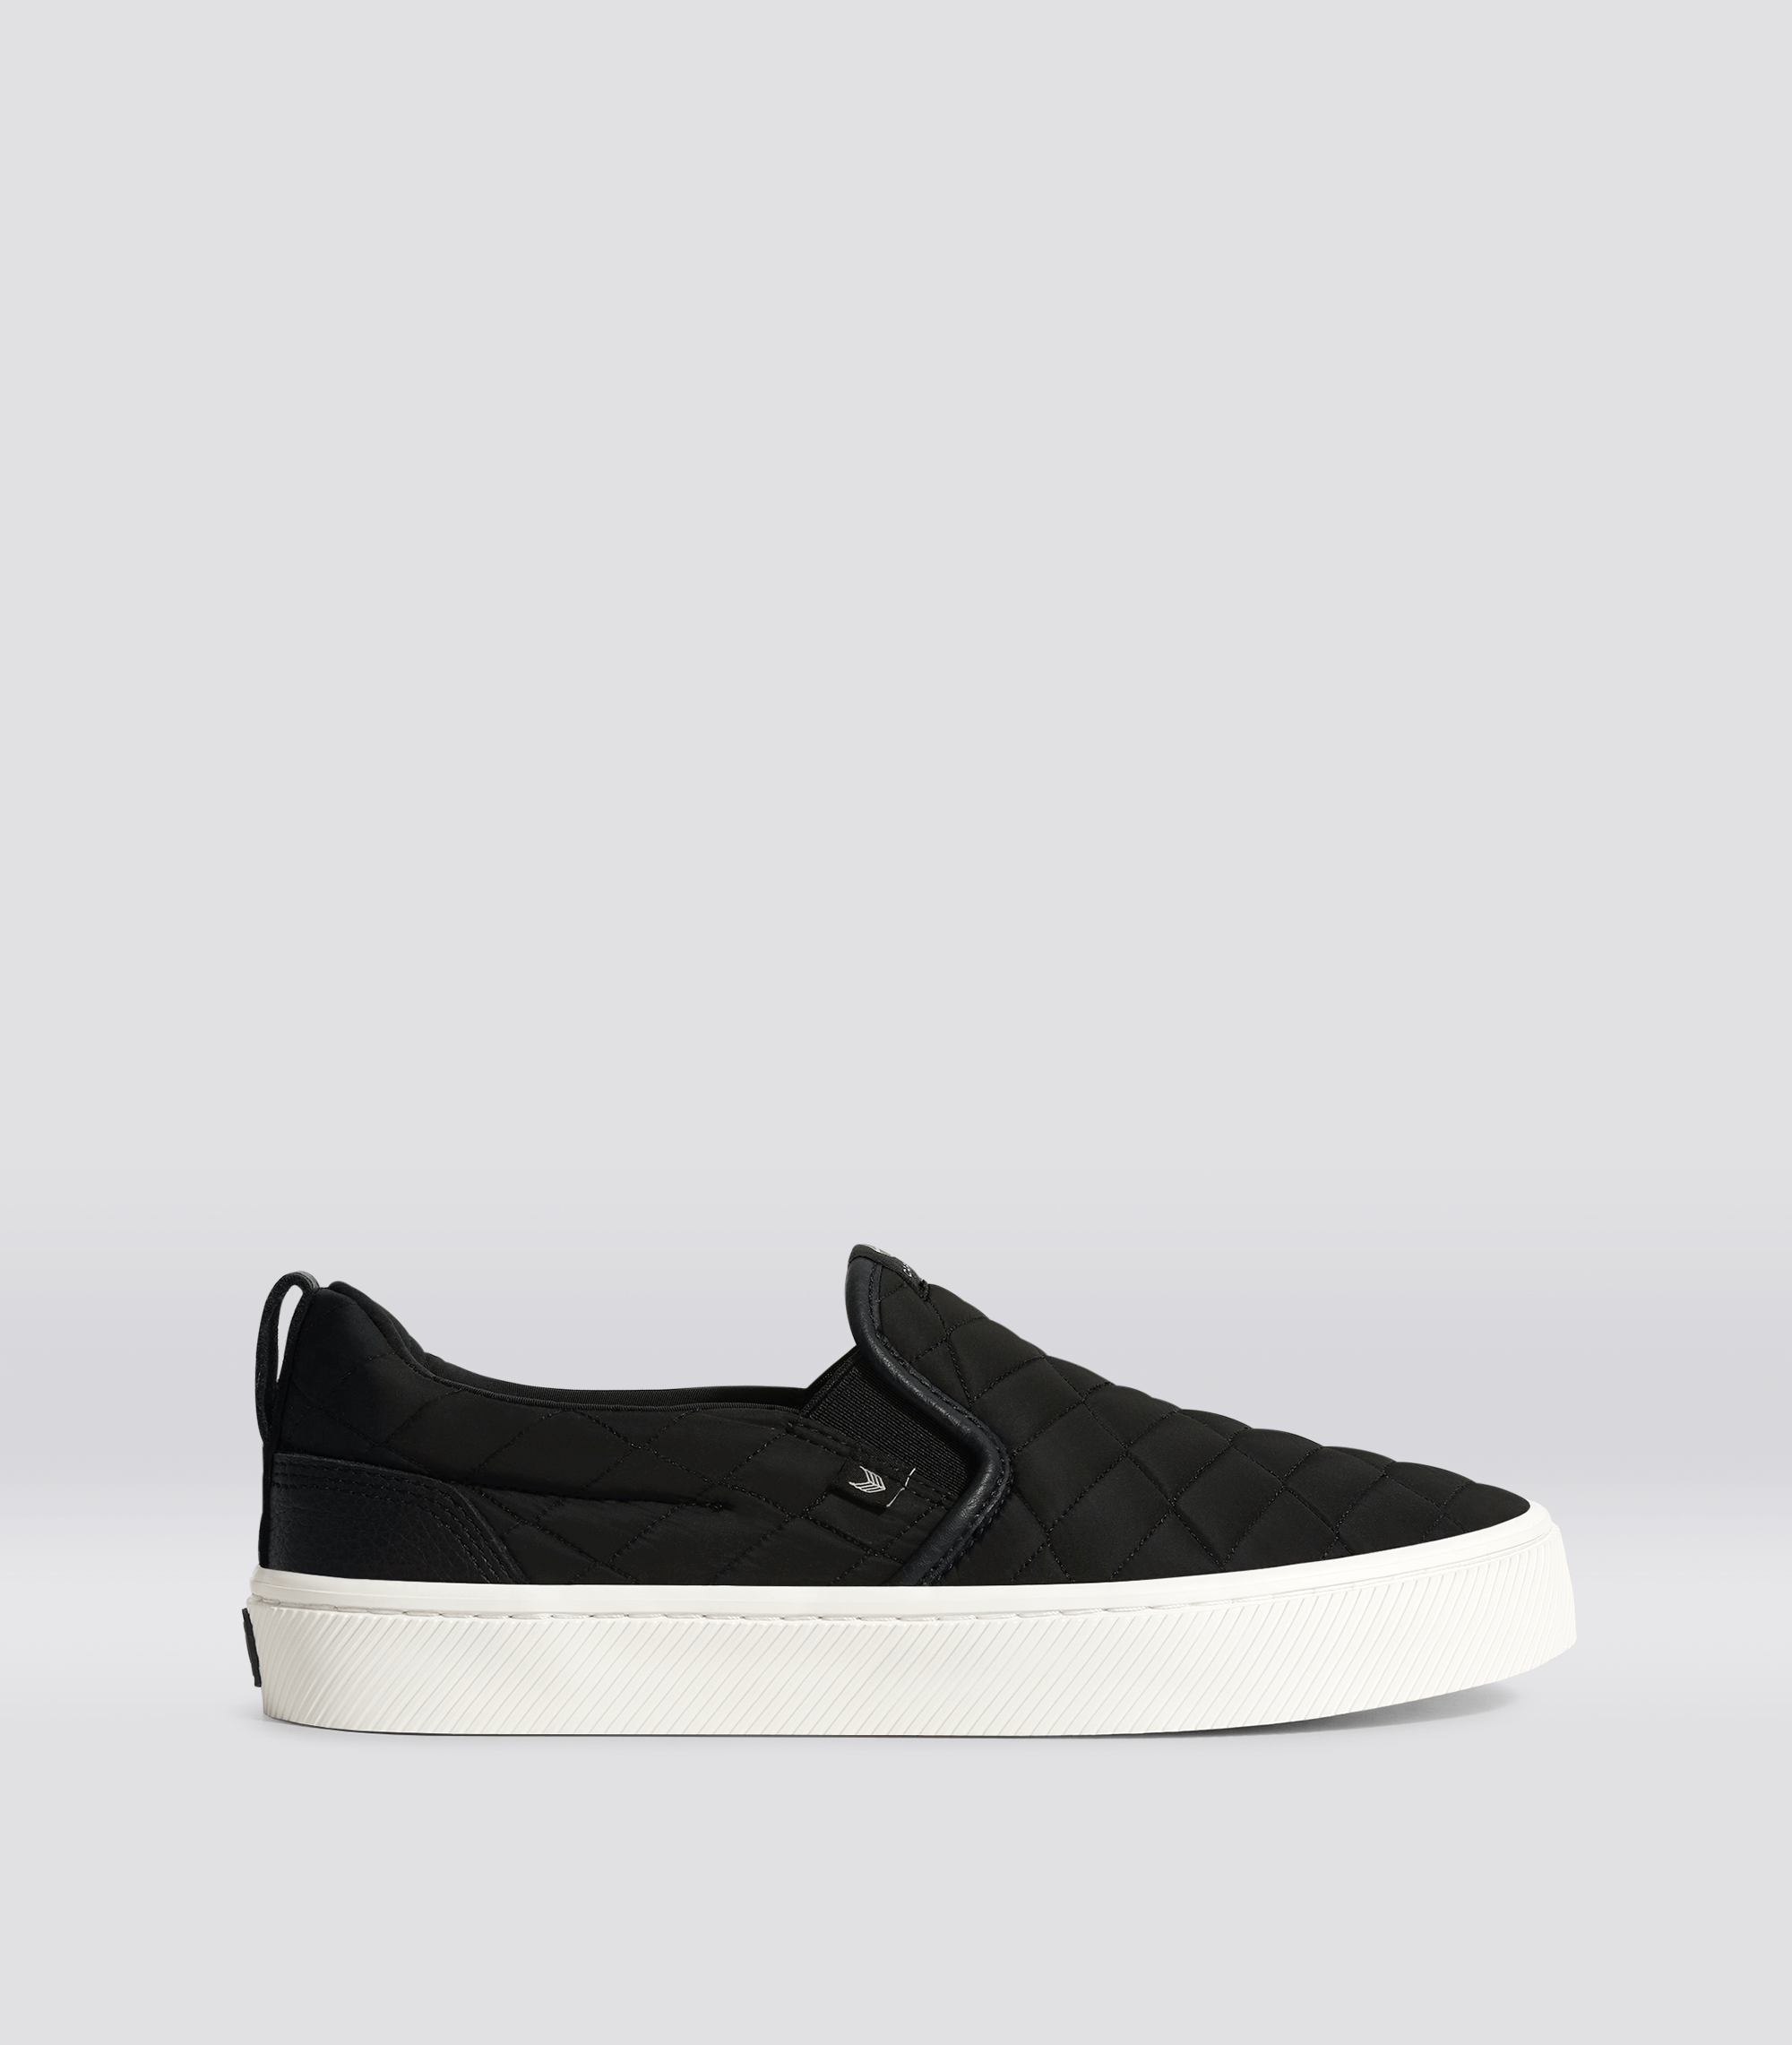 SLIP-ON Quilt Black Premium Leather Sneaker Men